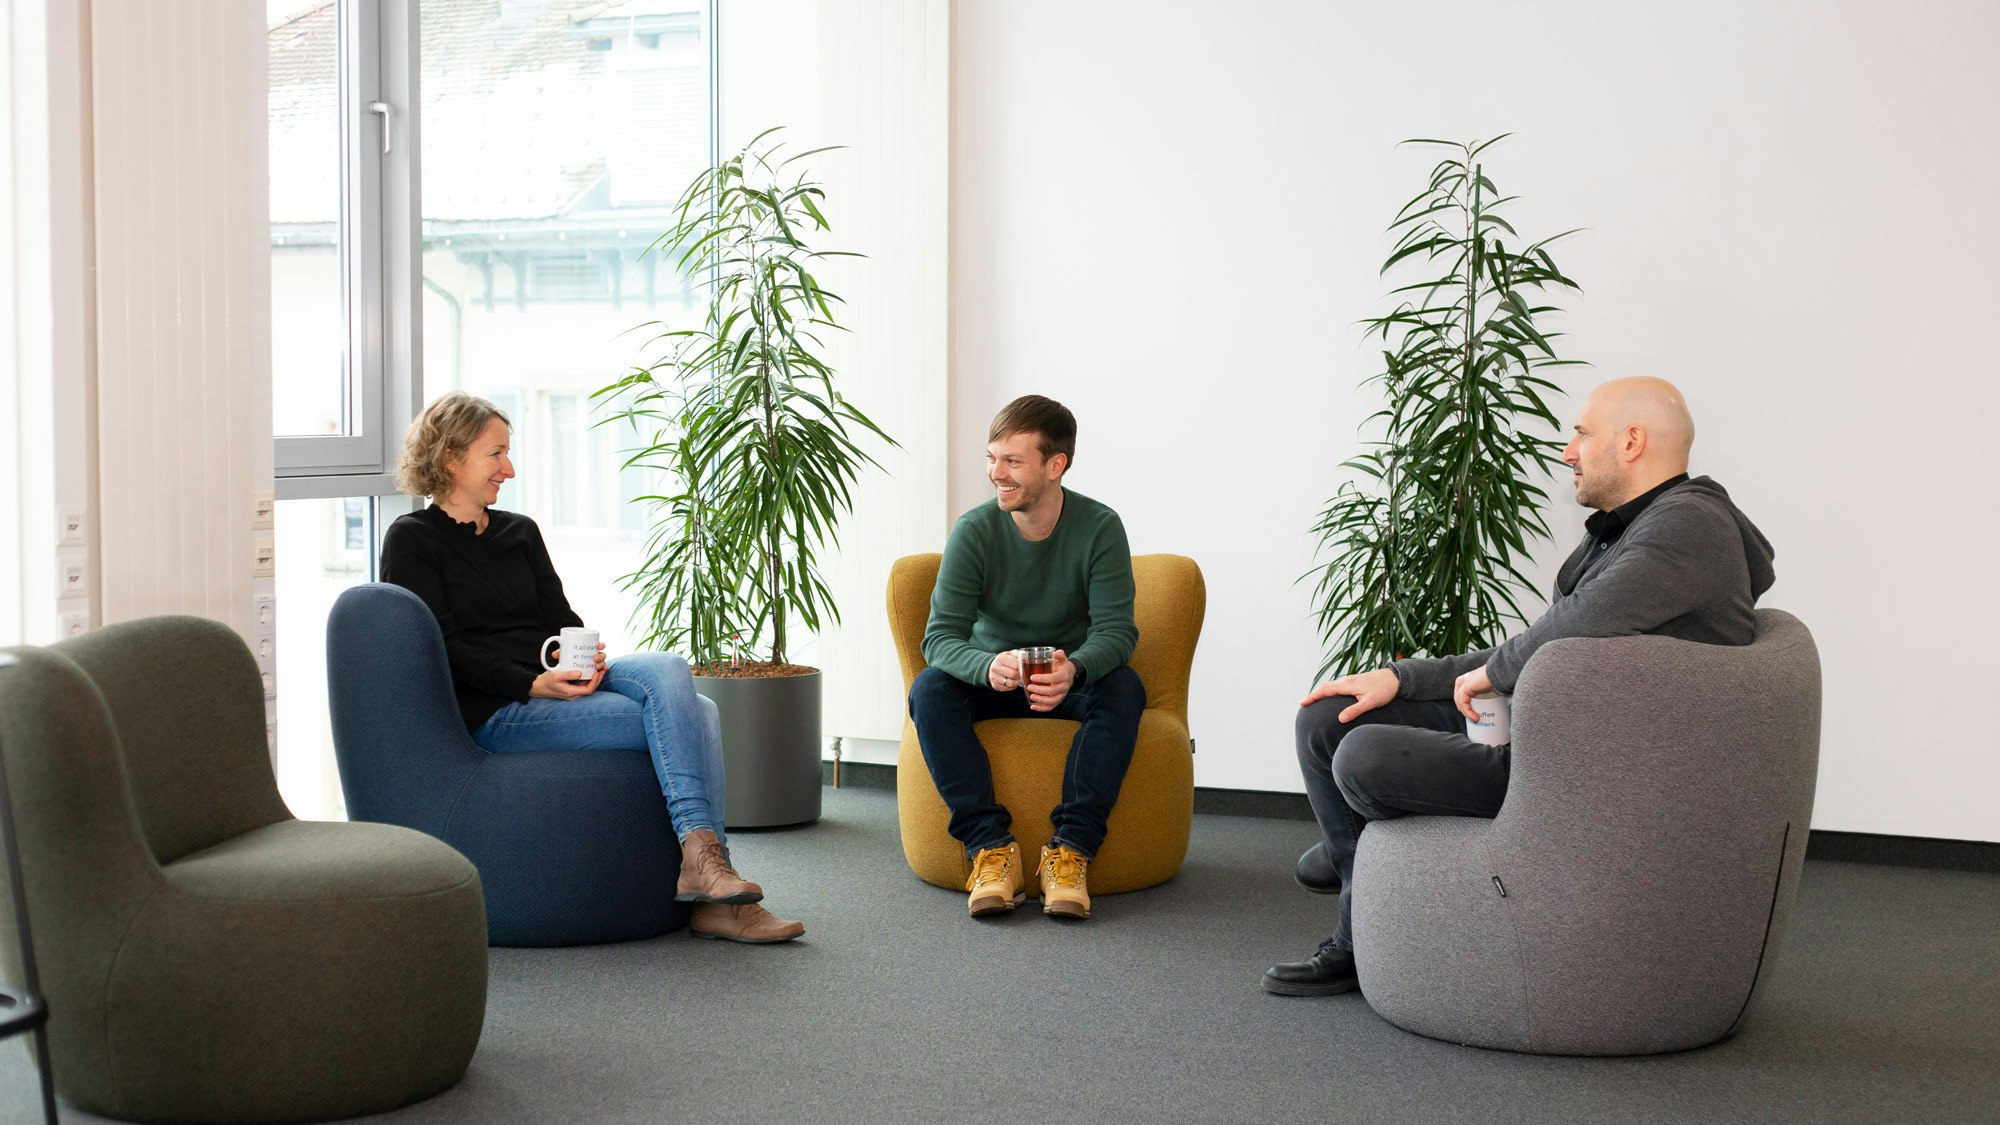 Drei Menschen auf komfortablen Sesseln, in einer Büroumgebung mit Pflanzen